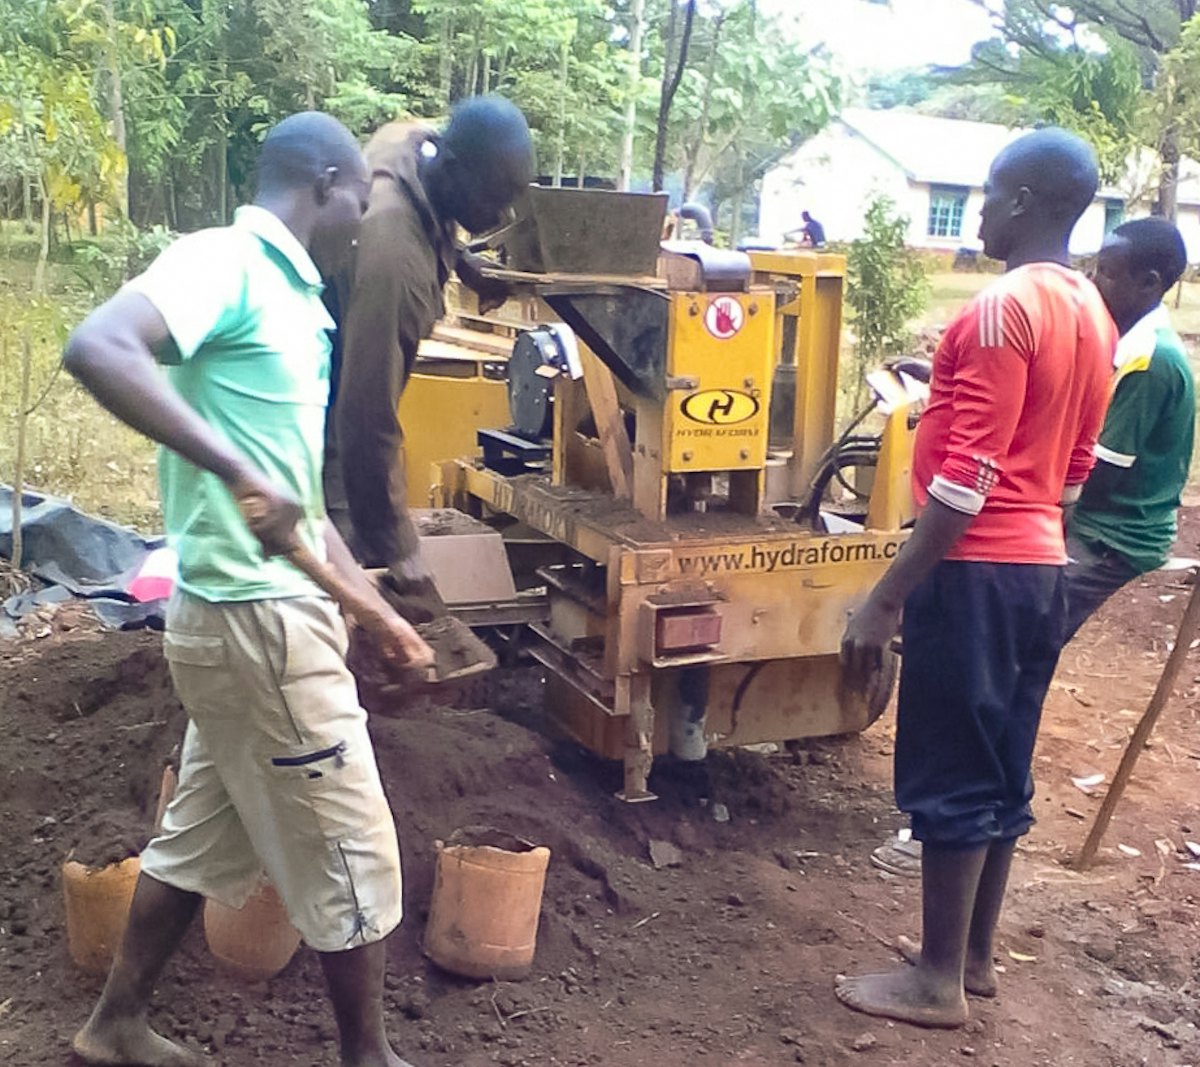 En el proyecto de construcción de un centro educativo en Namawanga se utilizó una máquina hidráulica que prensa ladrillos fabricados principalmente con tierra del lugar. La máquina produce ladrillos encajables que son fáciles de montar sin necesidad de mortero.